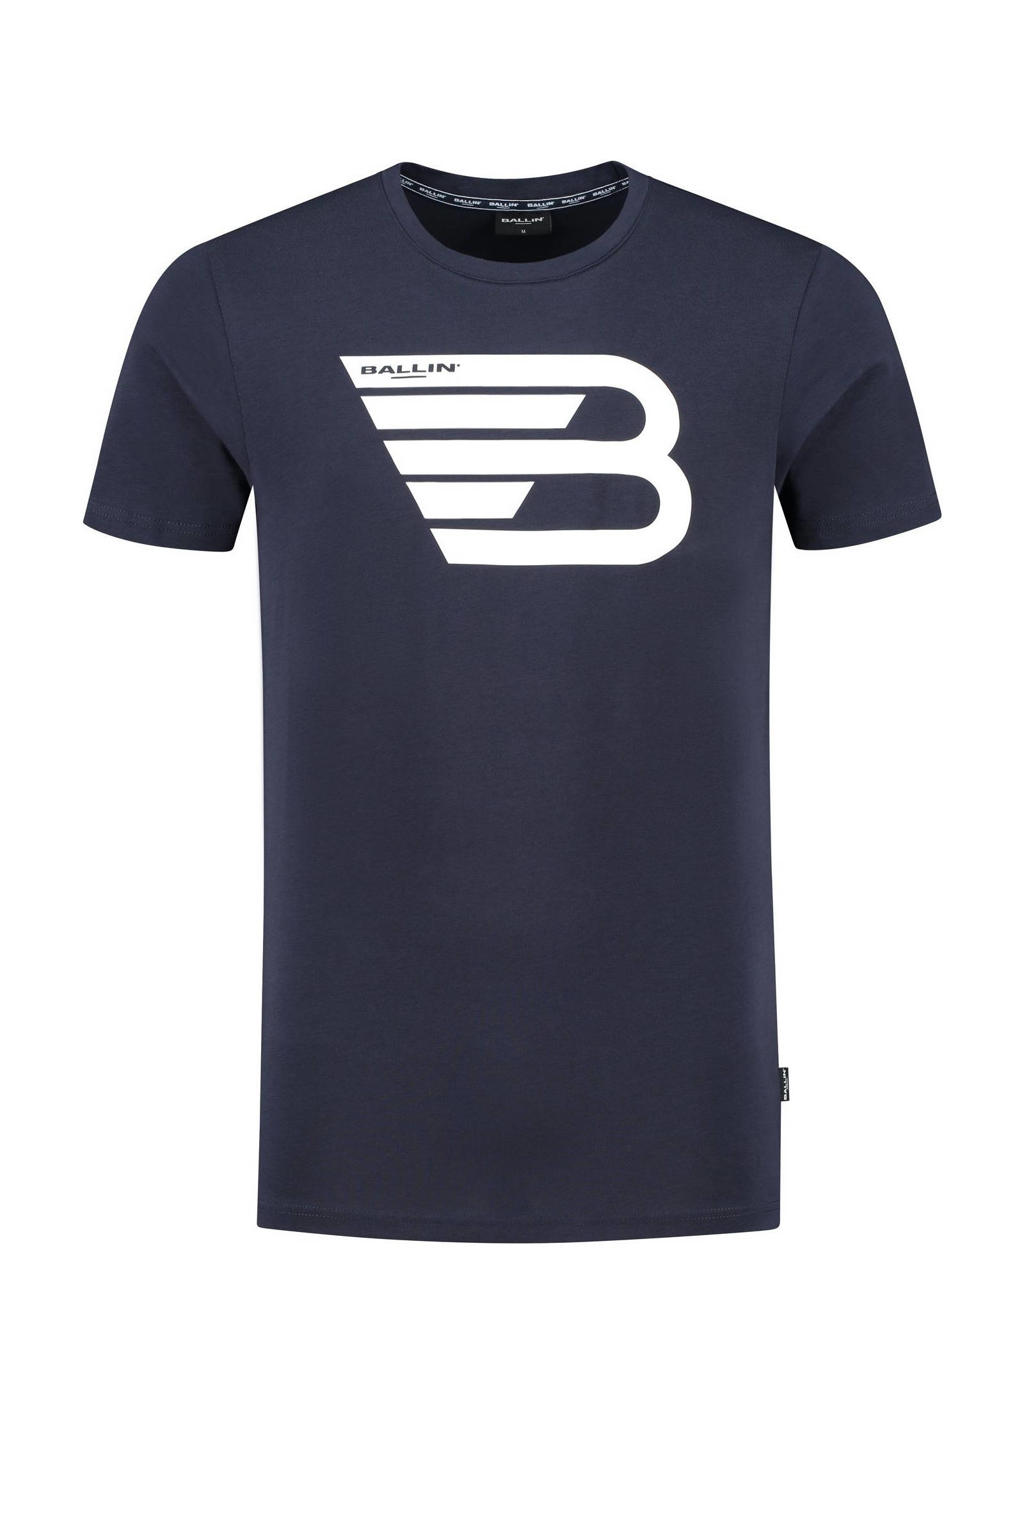 Donkerblauwe heren Ballin T-shirt original icon van katoen met logo dessin, korte mouwen en ronde hals